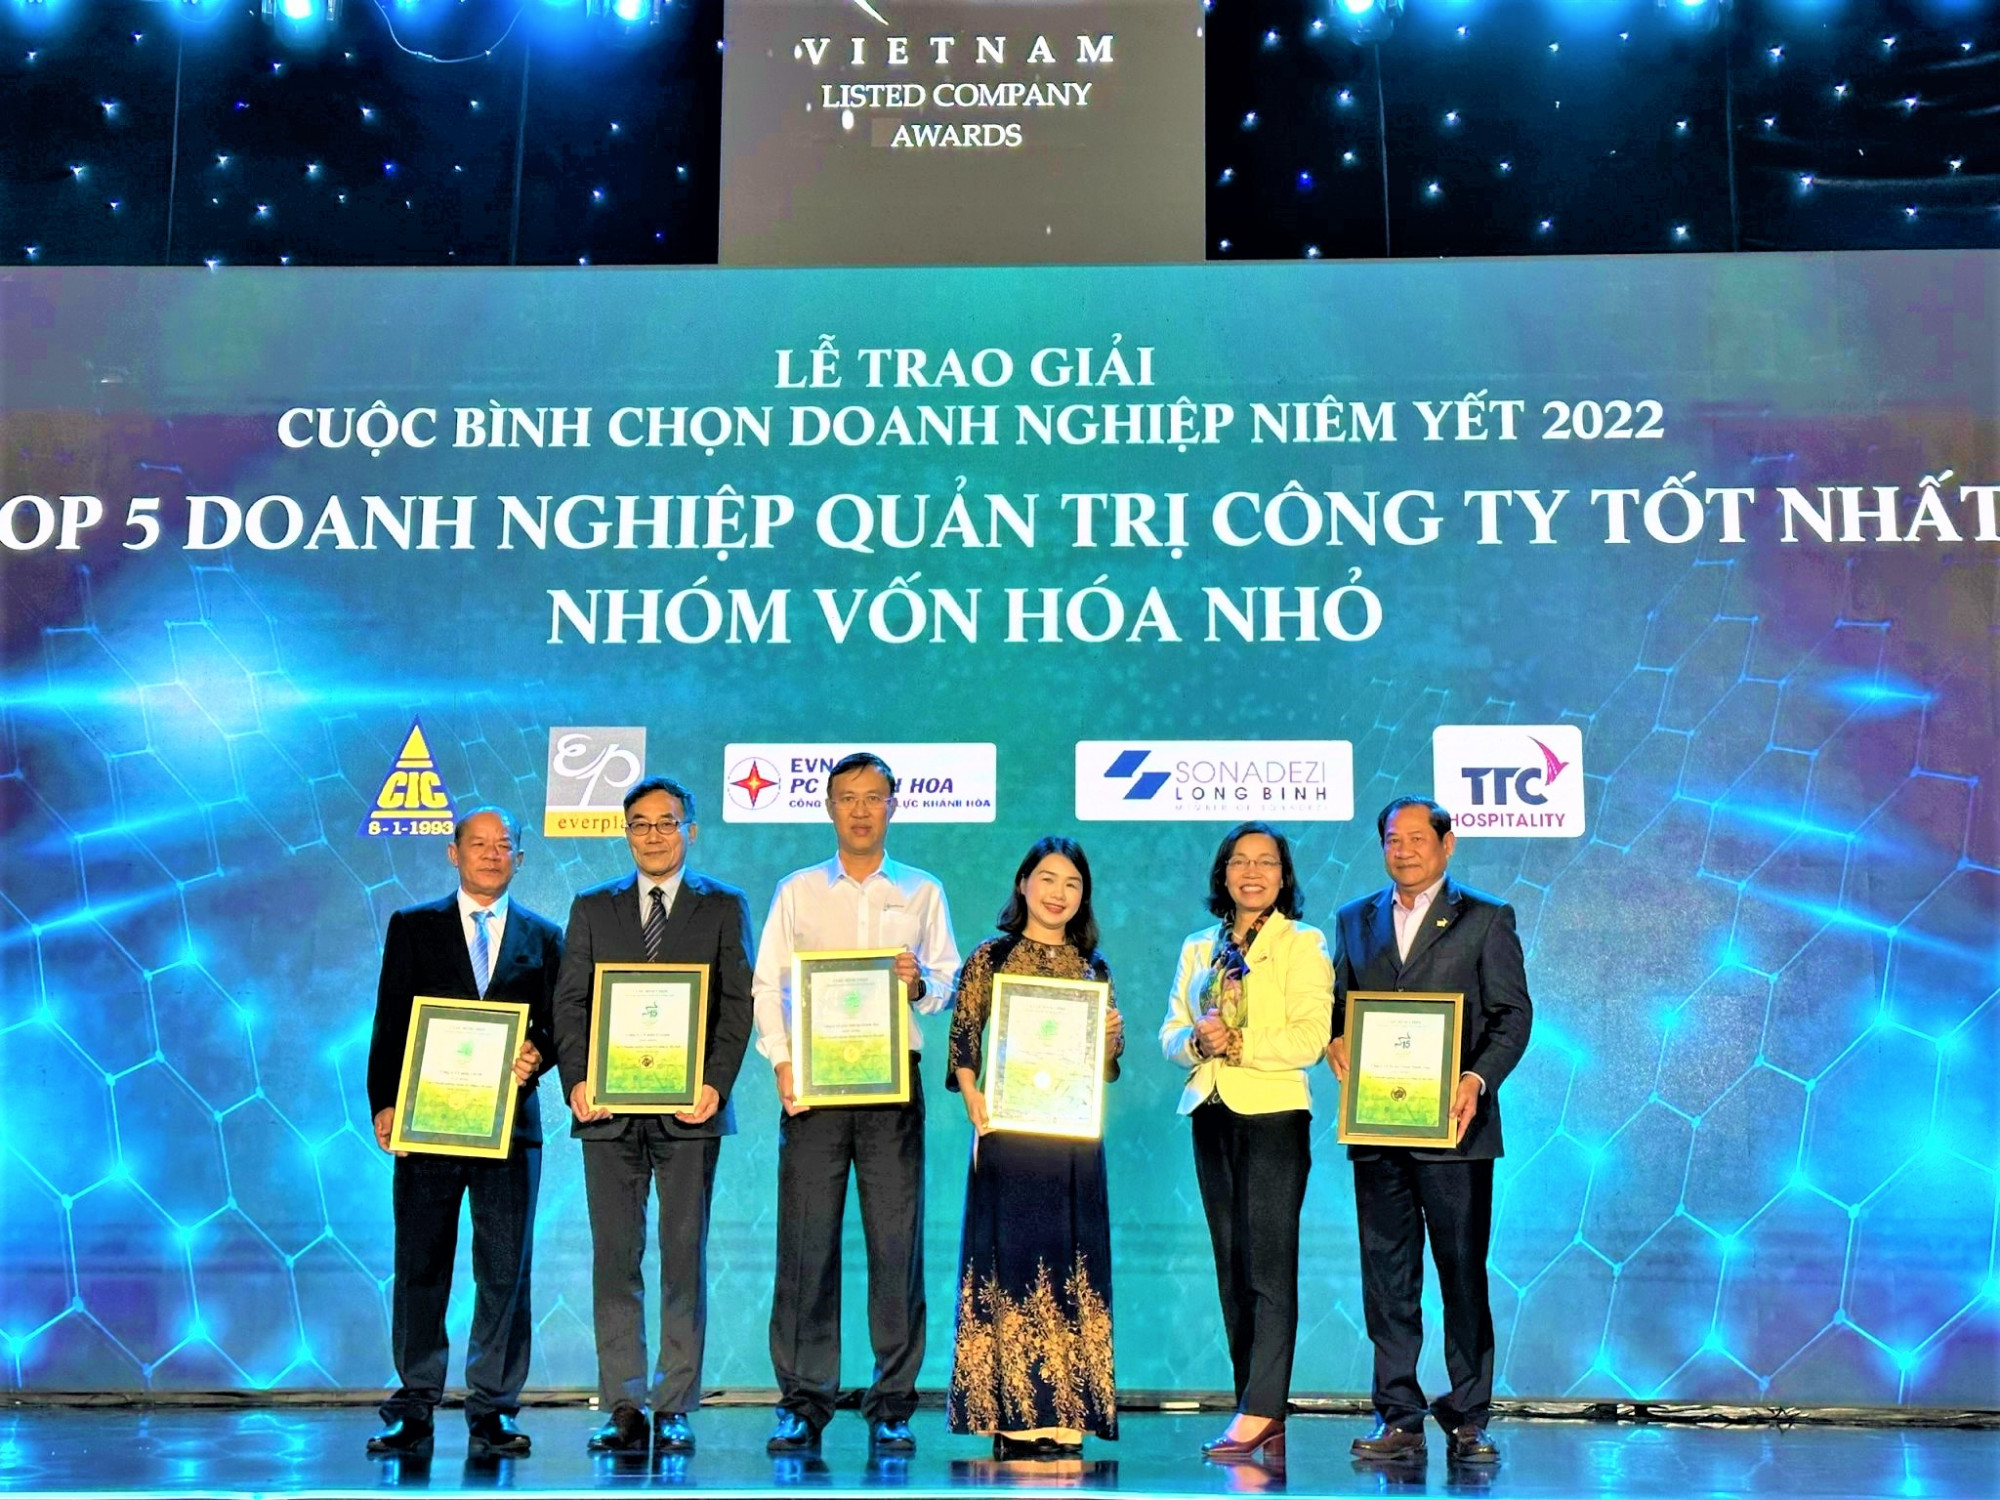 Iris Chau Vo Ông Nguyễn Hải Đức - Tổng giám đốc PC Khánh Hòa (người mặc áo trắng đứng giữa), đại diện doanh nghiệp nhận Giải thưởng “Top 5 doanh nghiệp quản trị công ty tốt nhất năm 2022” (nhóm vốn hóa nhỏ)